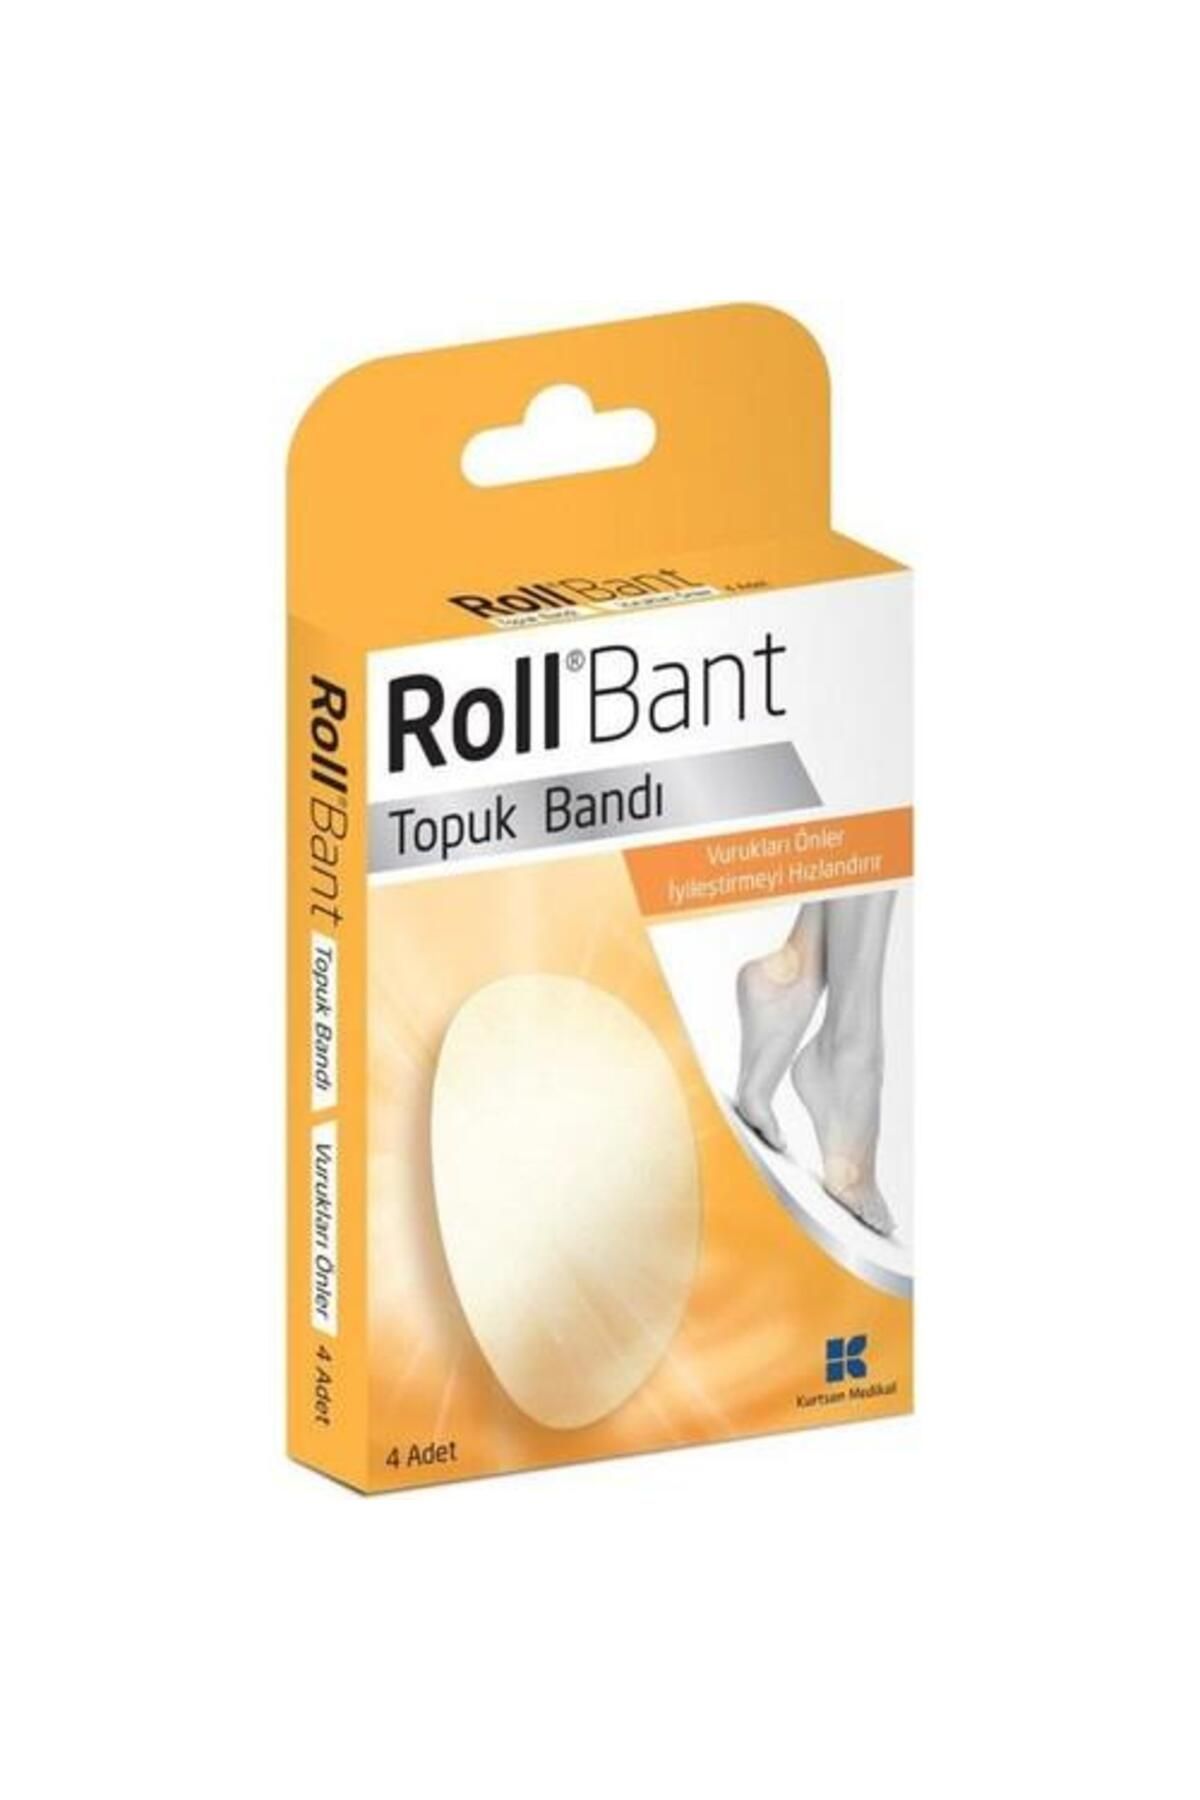 Roll Bant Topuk Bandı 4 Adet ( Ayak Vuruklarını Önler )